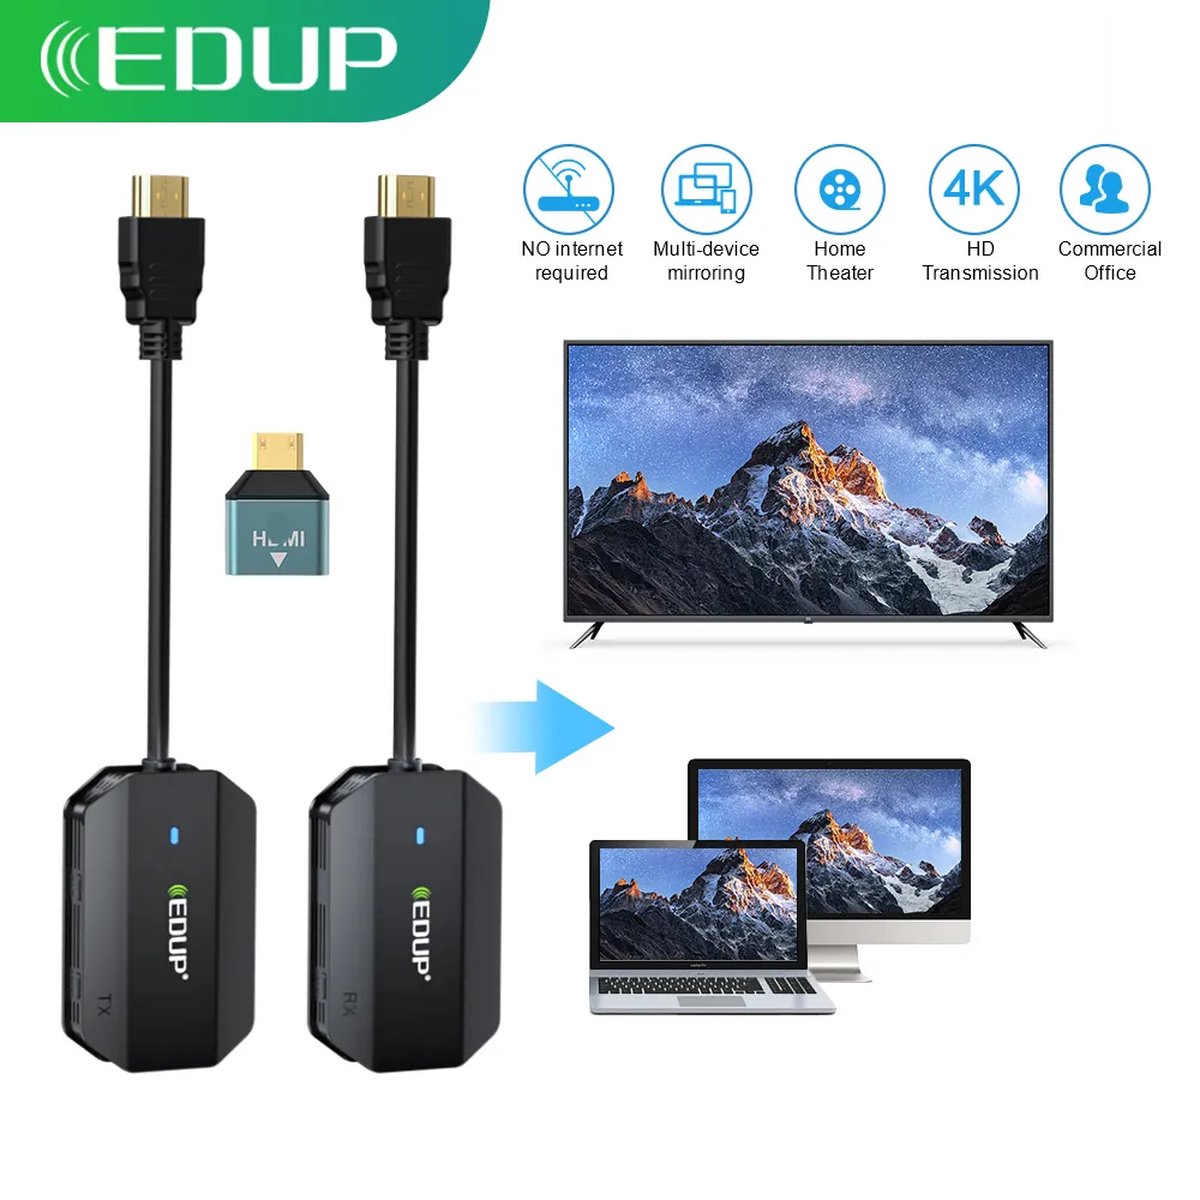 Viatel EDUP Wireless HDMI Kit | Draadloze HDMI Zender & Ontvanger | 1080P Video/Audio | Plug & Play | 0.1s Lage Latentie | 98FT/30M Bereik | Geschikt voor Laptop/PC/Camera/Telefoon naar Monitor/Projector/HDTV | Dual Band 2.4G/5G